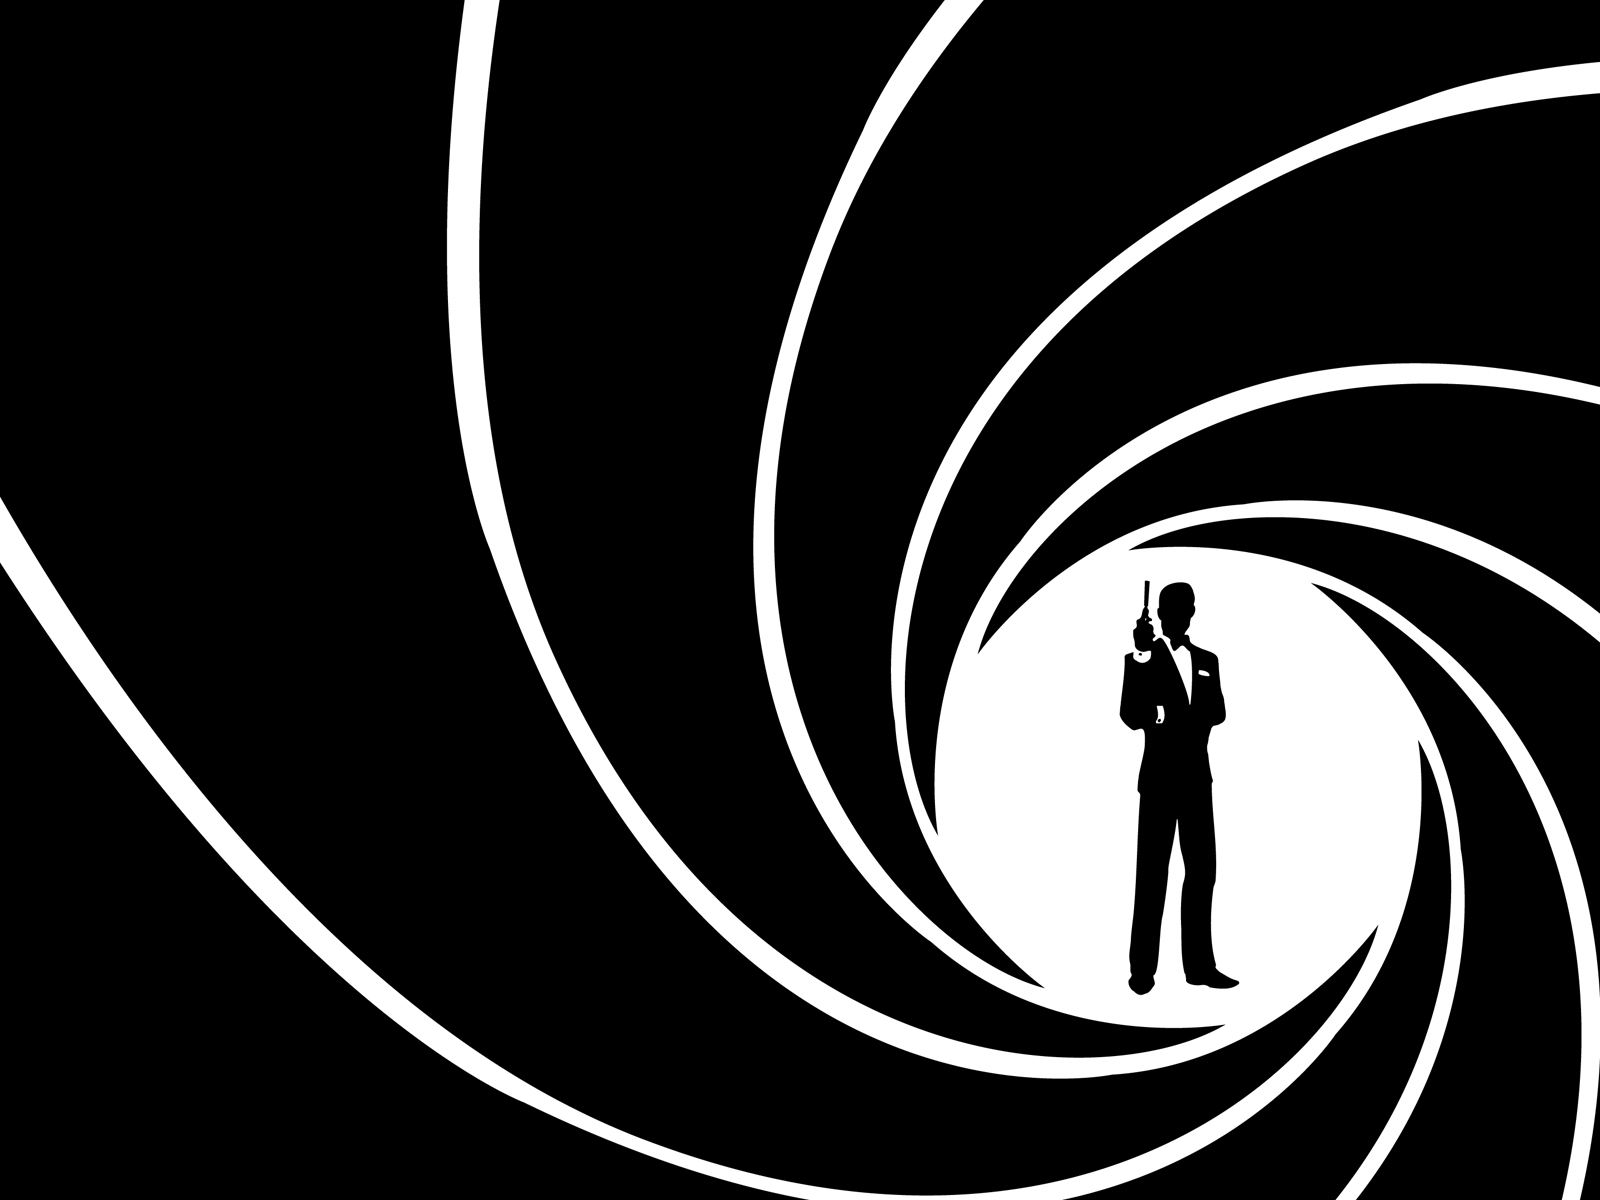 50 anys de James Bond o com reiventar-se constantment